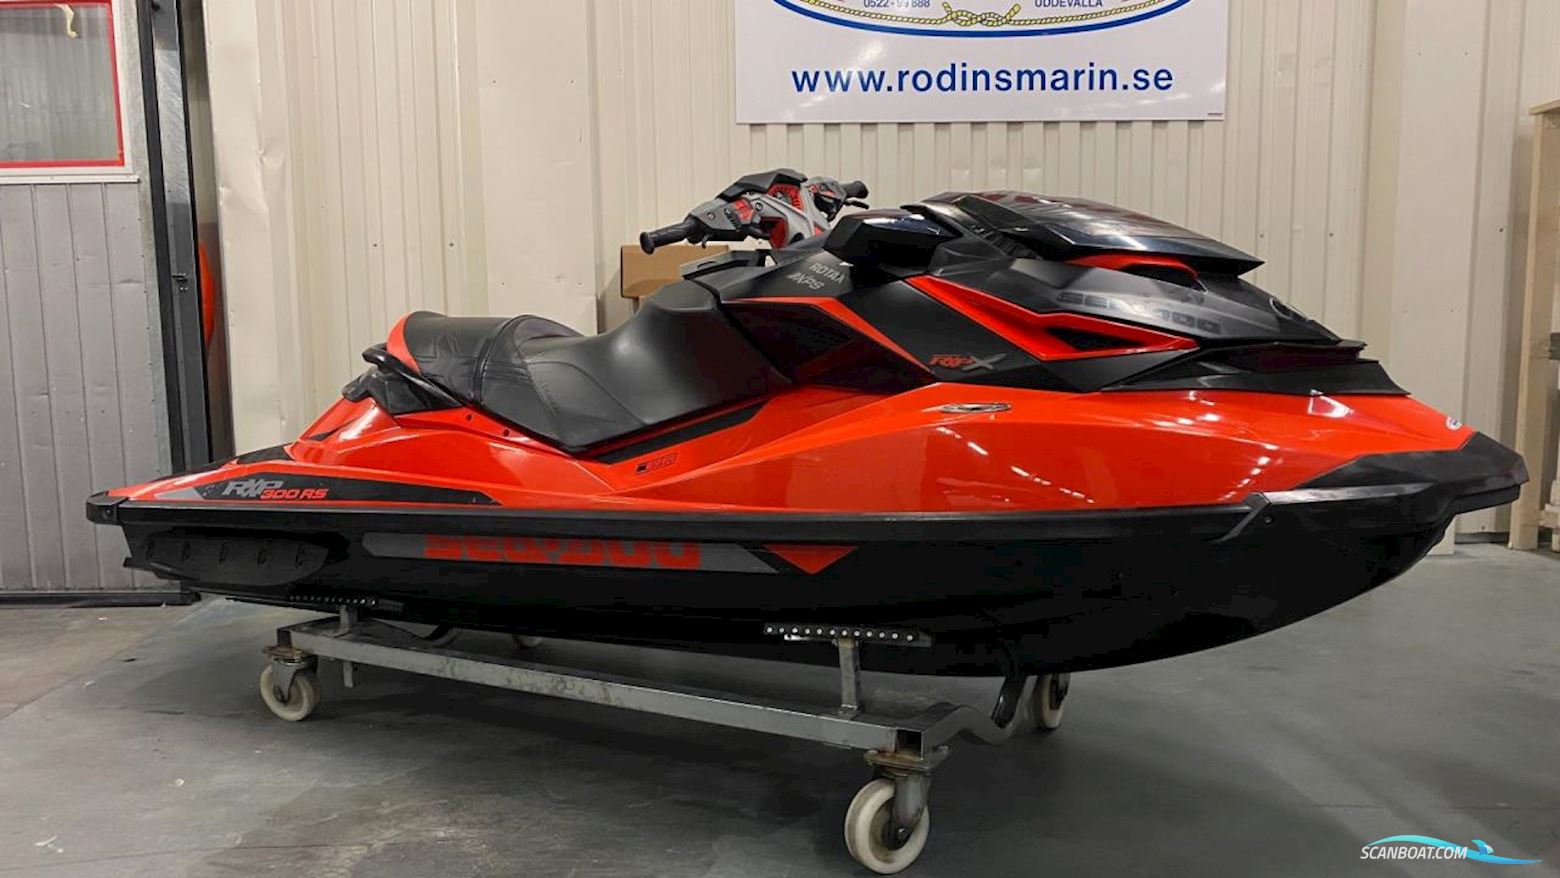 Sea-Doo Rxp Motorbåt 2016, med Rotax motor, Sverige